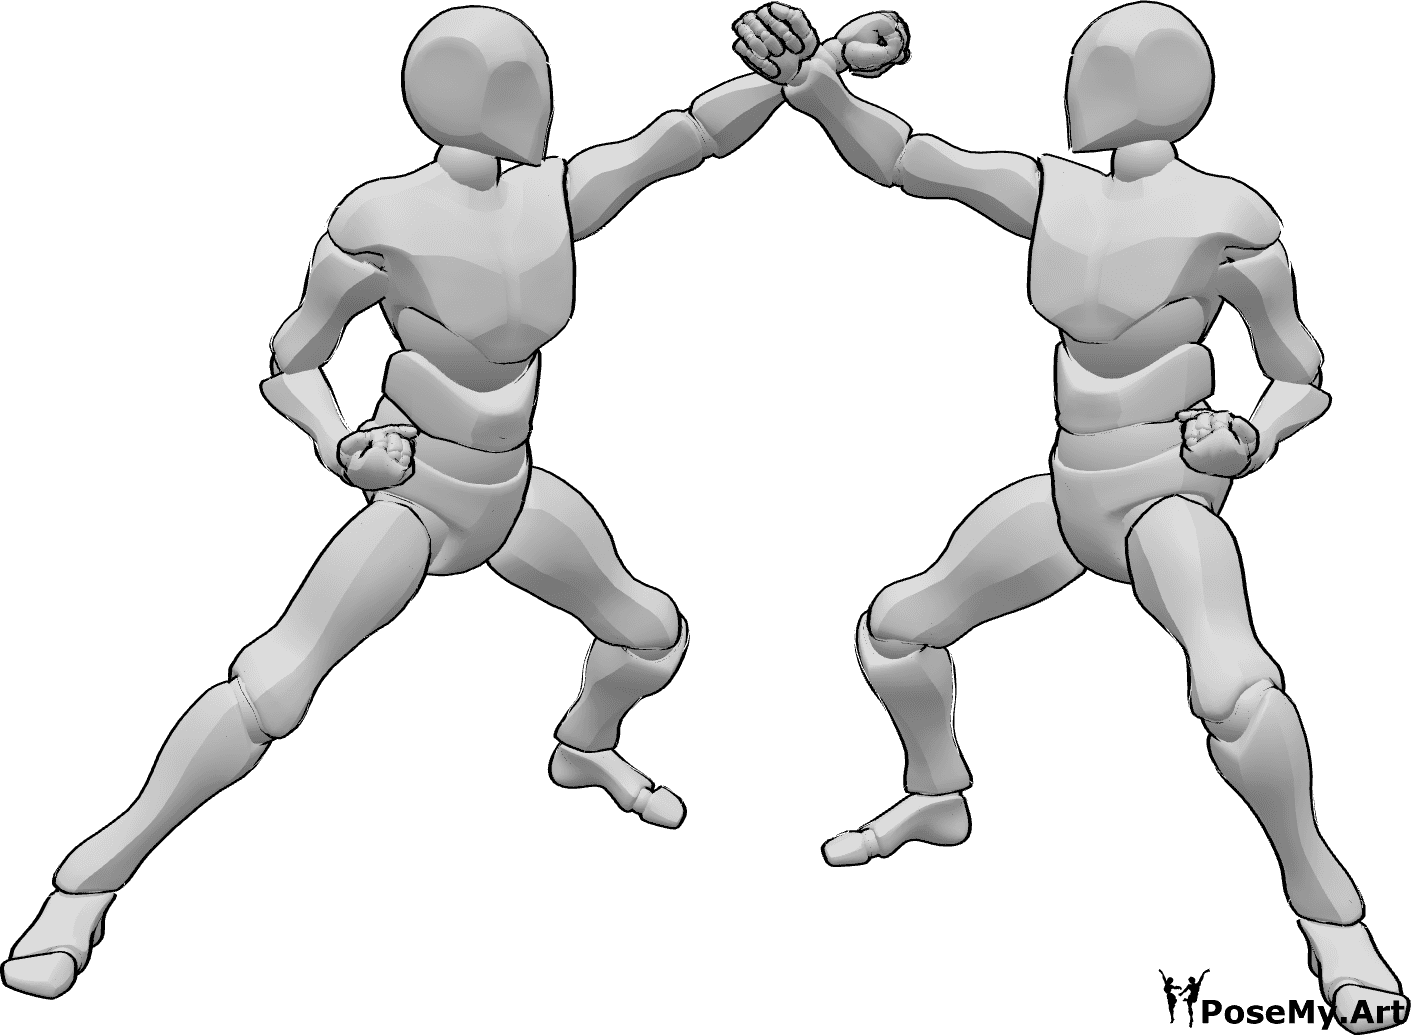 Referência de poses- Dois homens em pose de karaté - Dois homens estão a lutar em pose de karaté